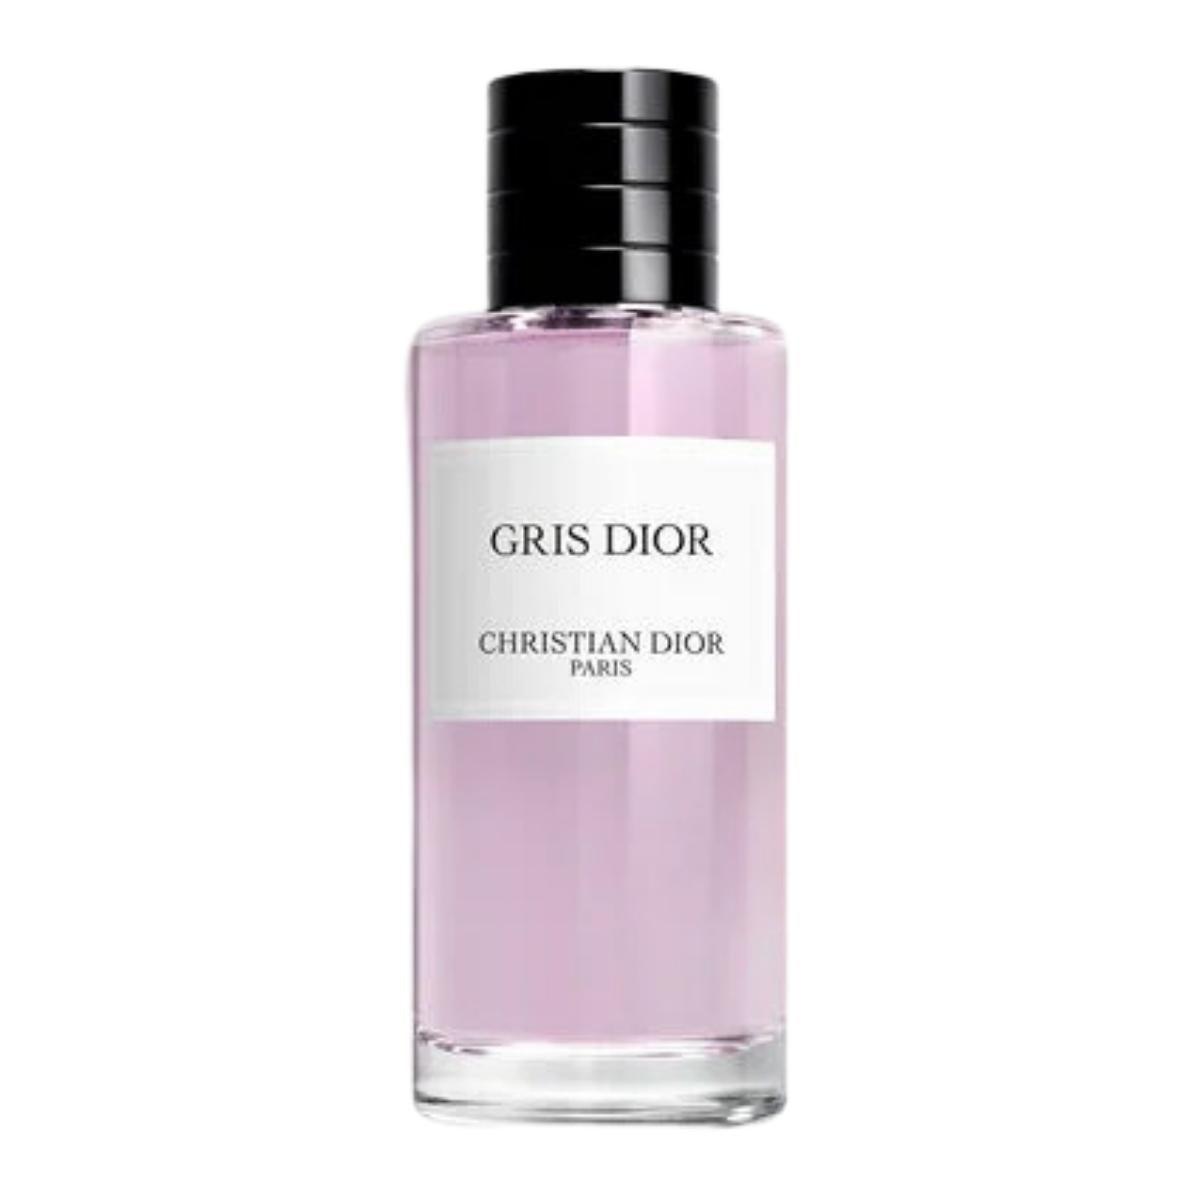 GRIS DIOR Unisex eau de parfum - chypre notes